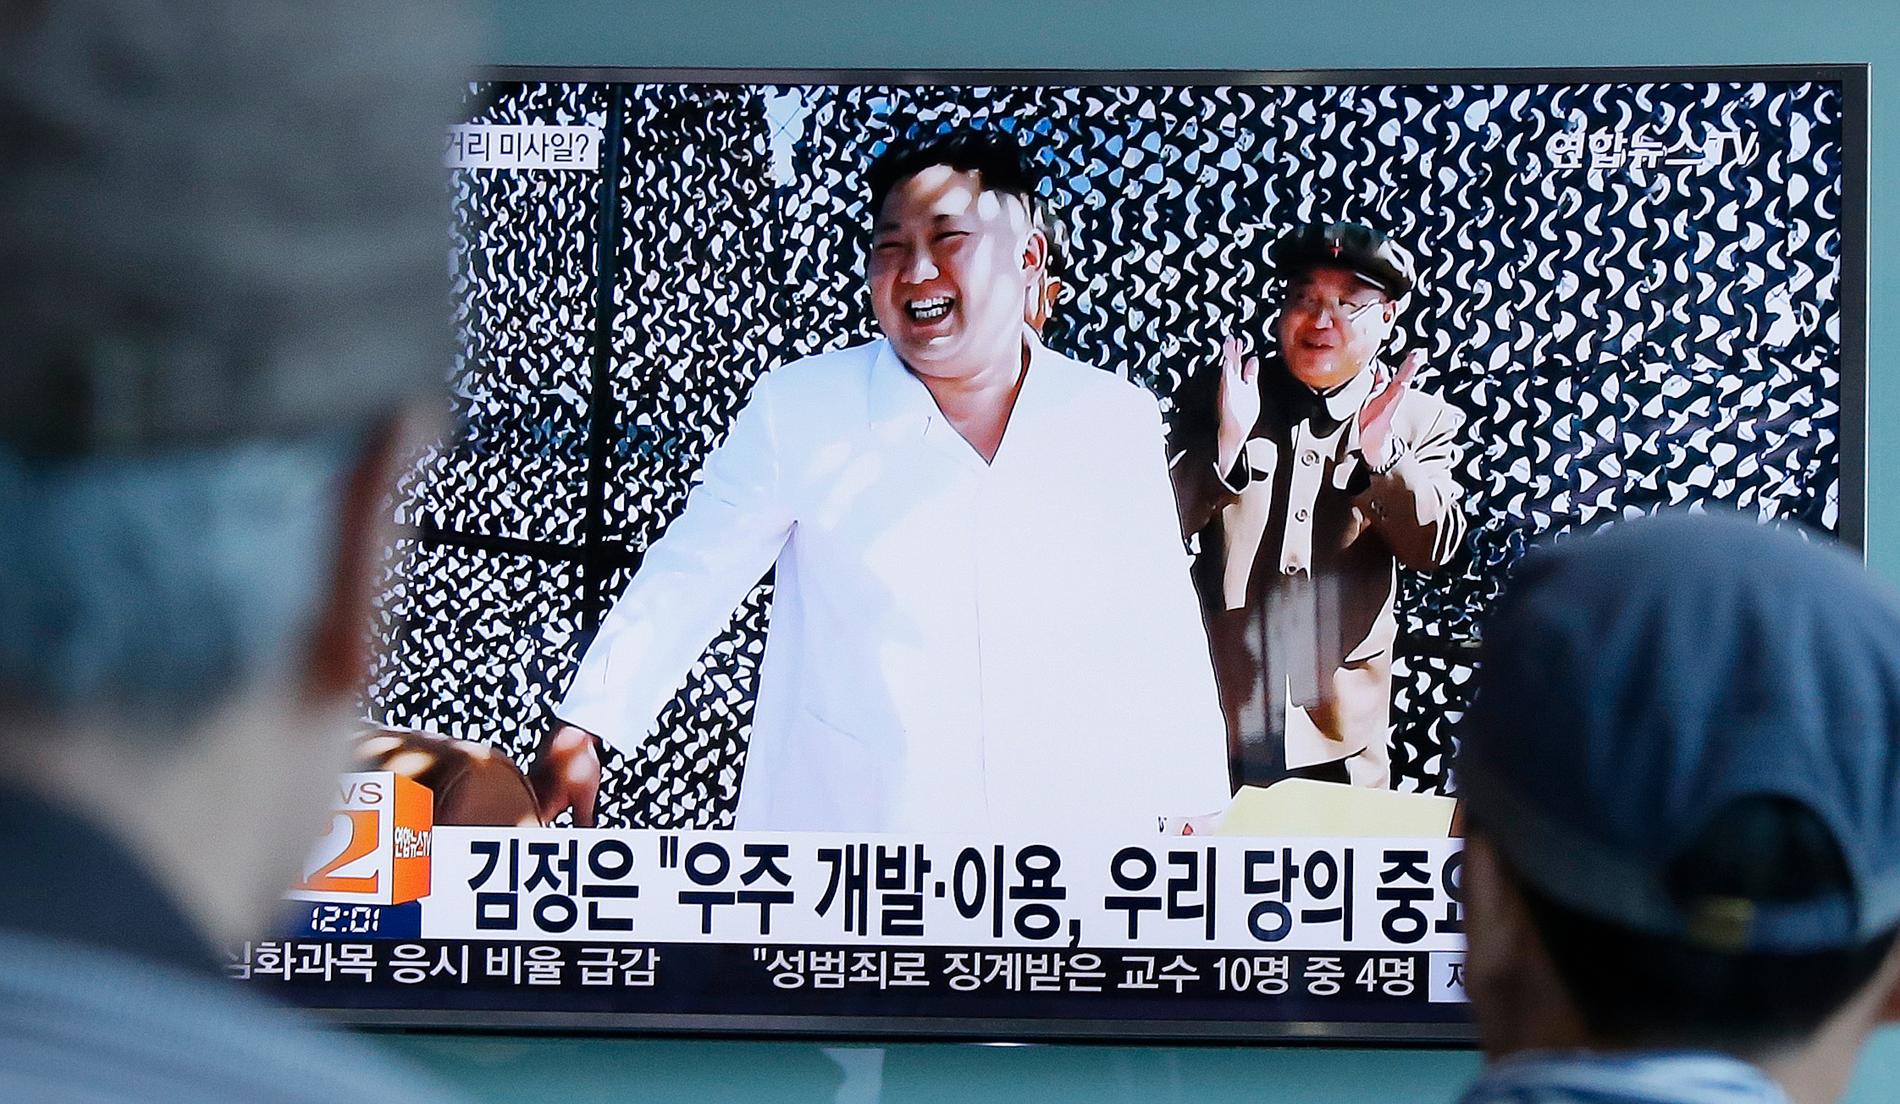 Nordkoreas ledare Kim Jong-Un. Arkivbild.